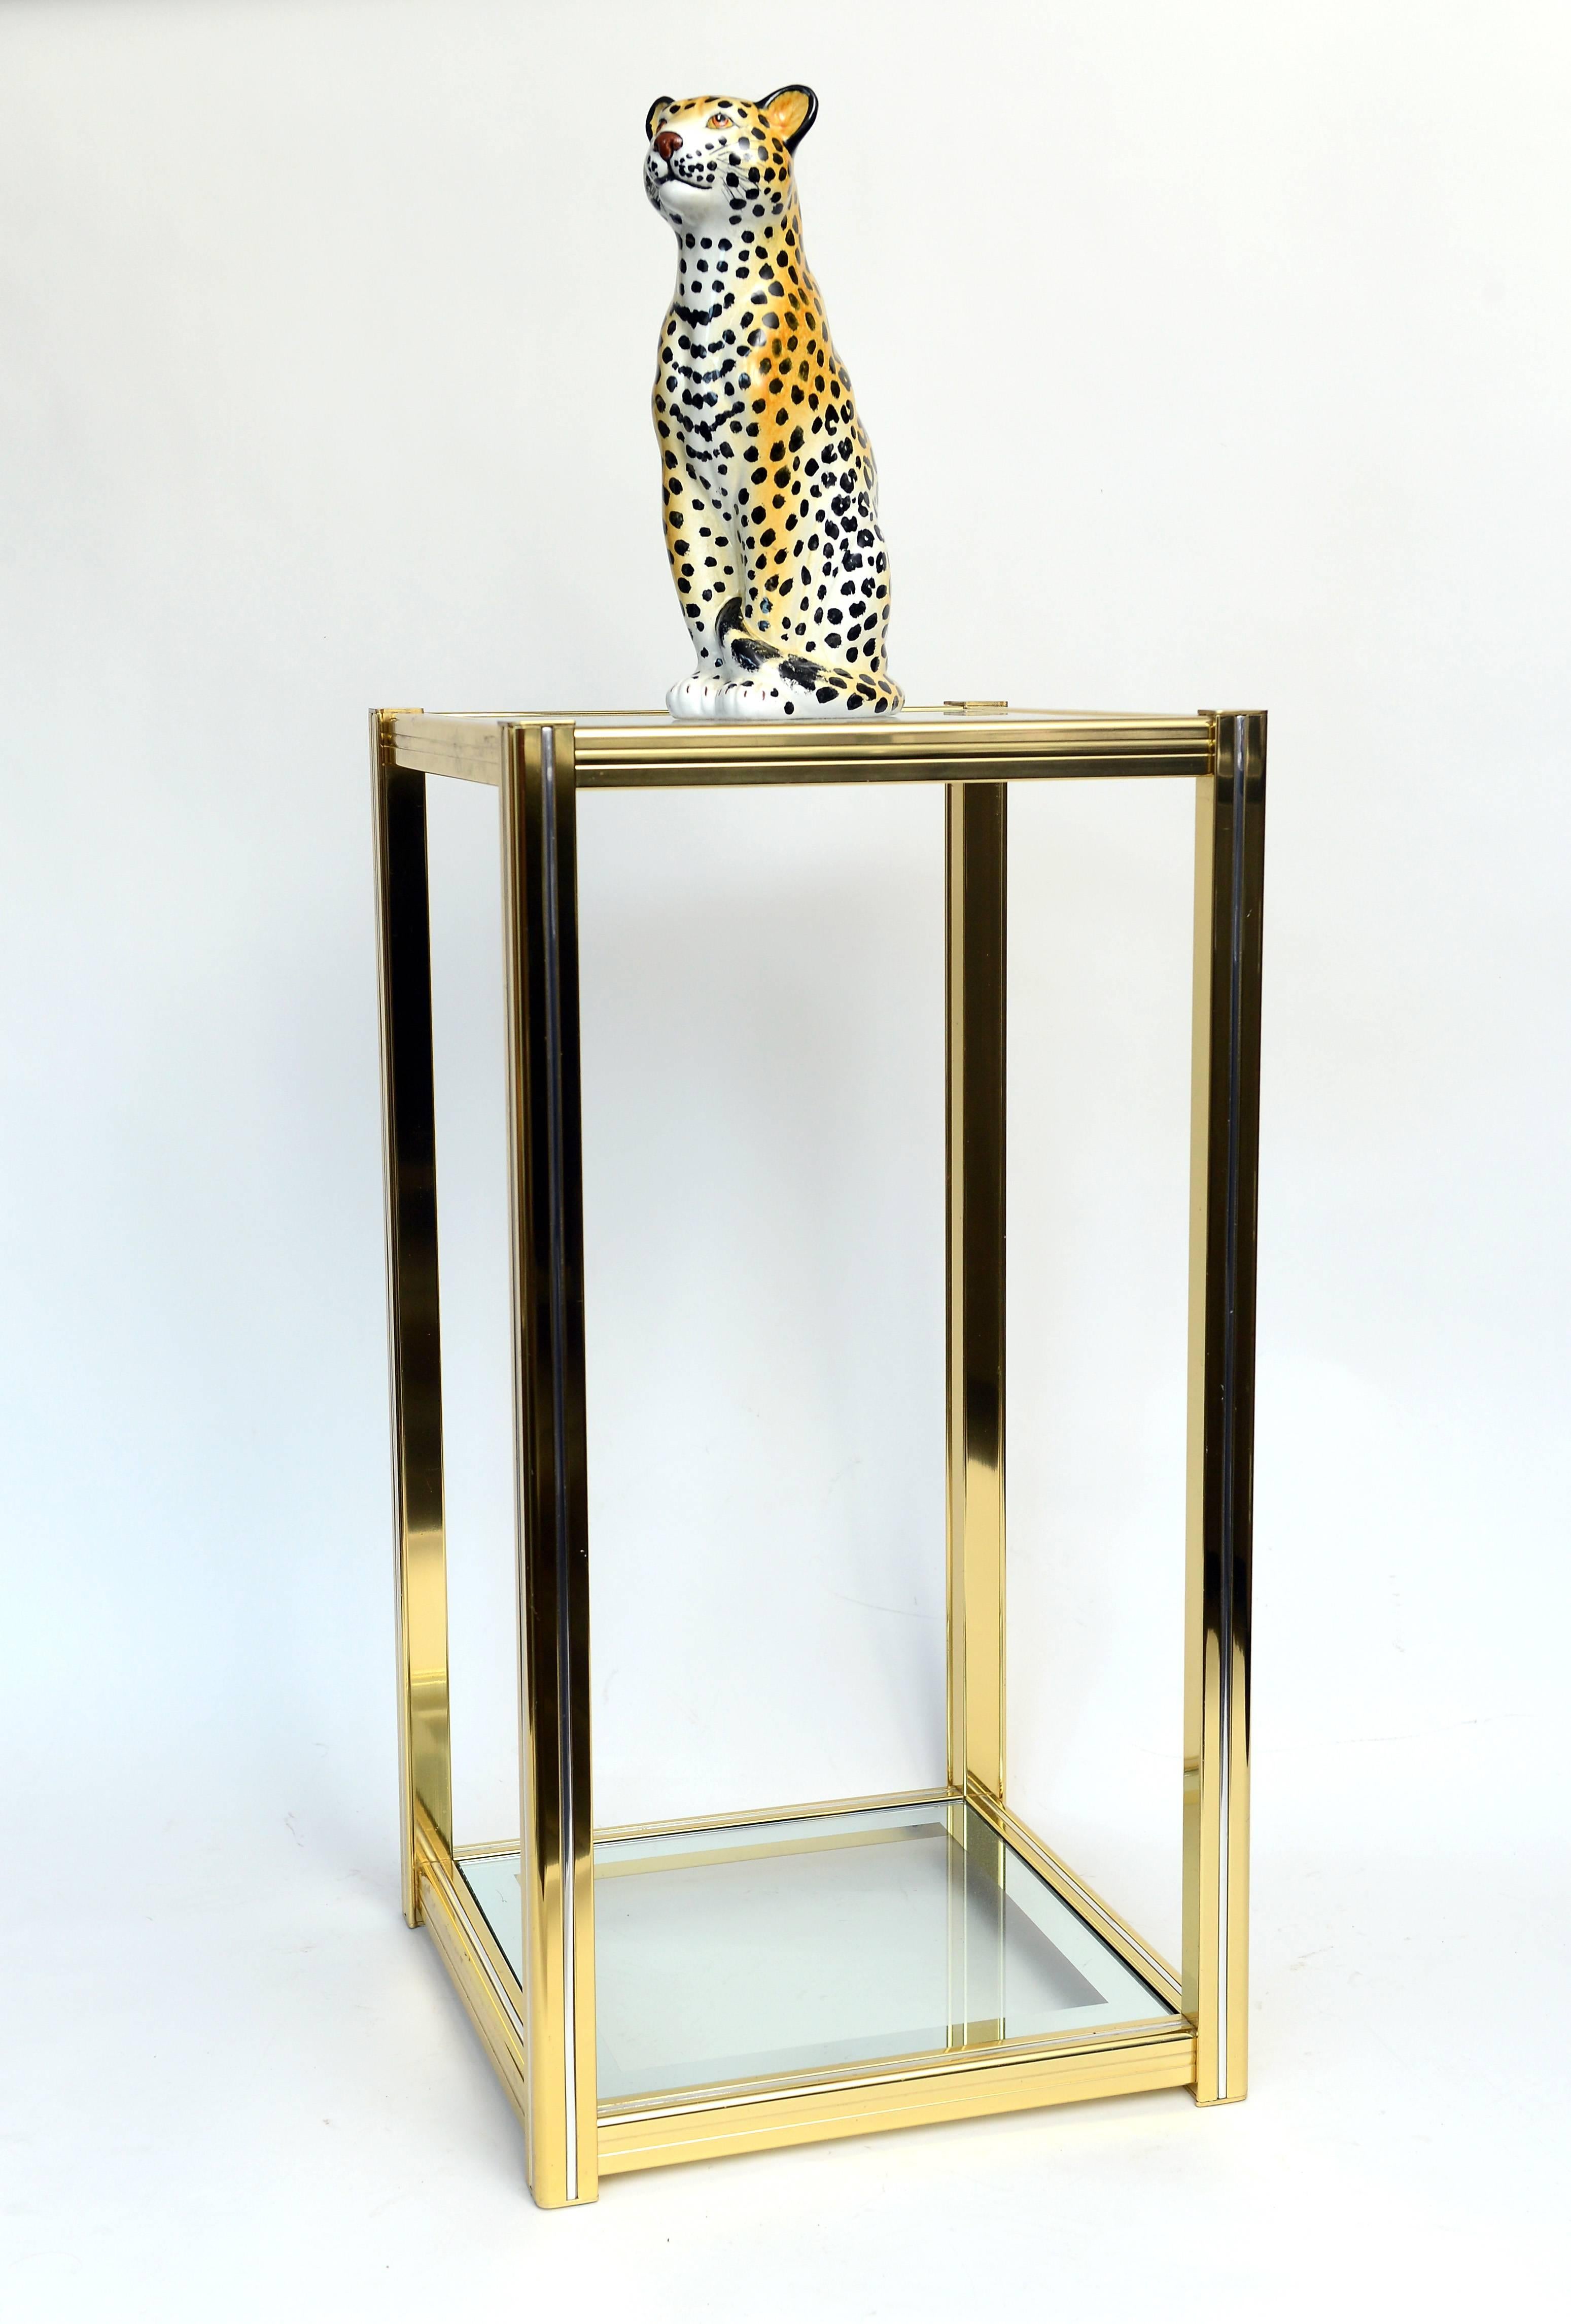 Italian Midcentury Ceramic Leopard Sculpture In Excellent Condition For Sale In Sint Joris Weert, BE